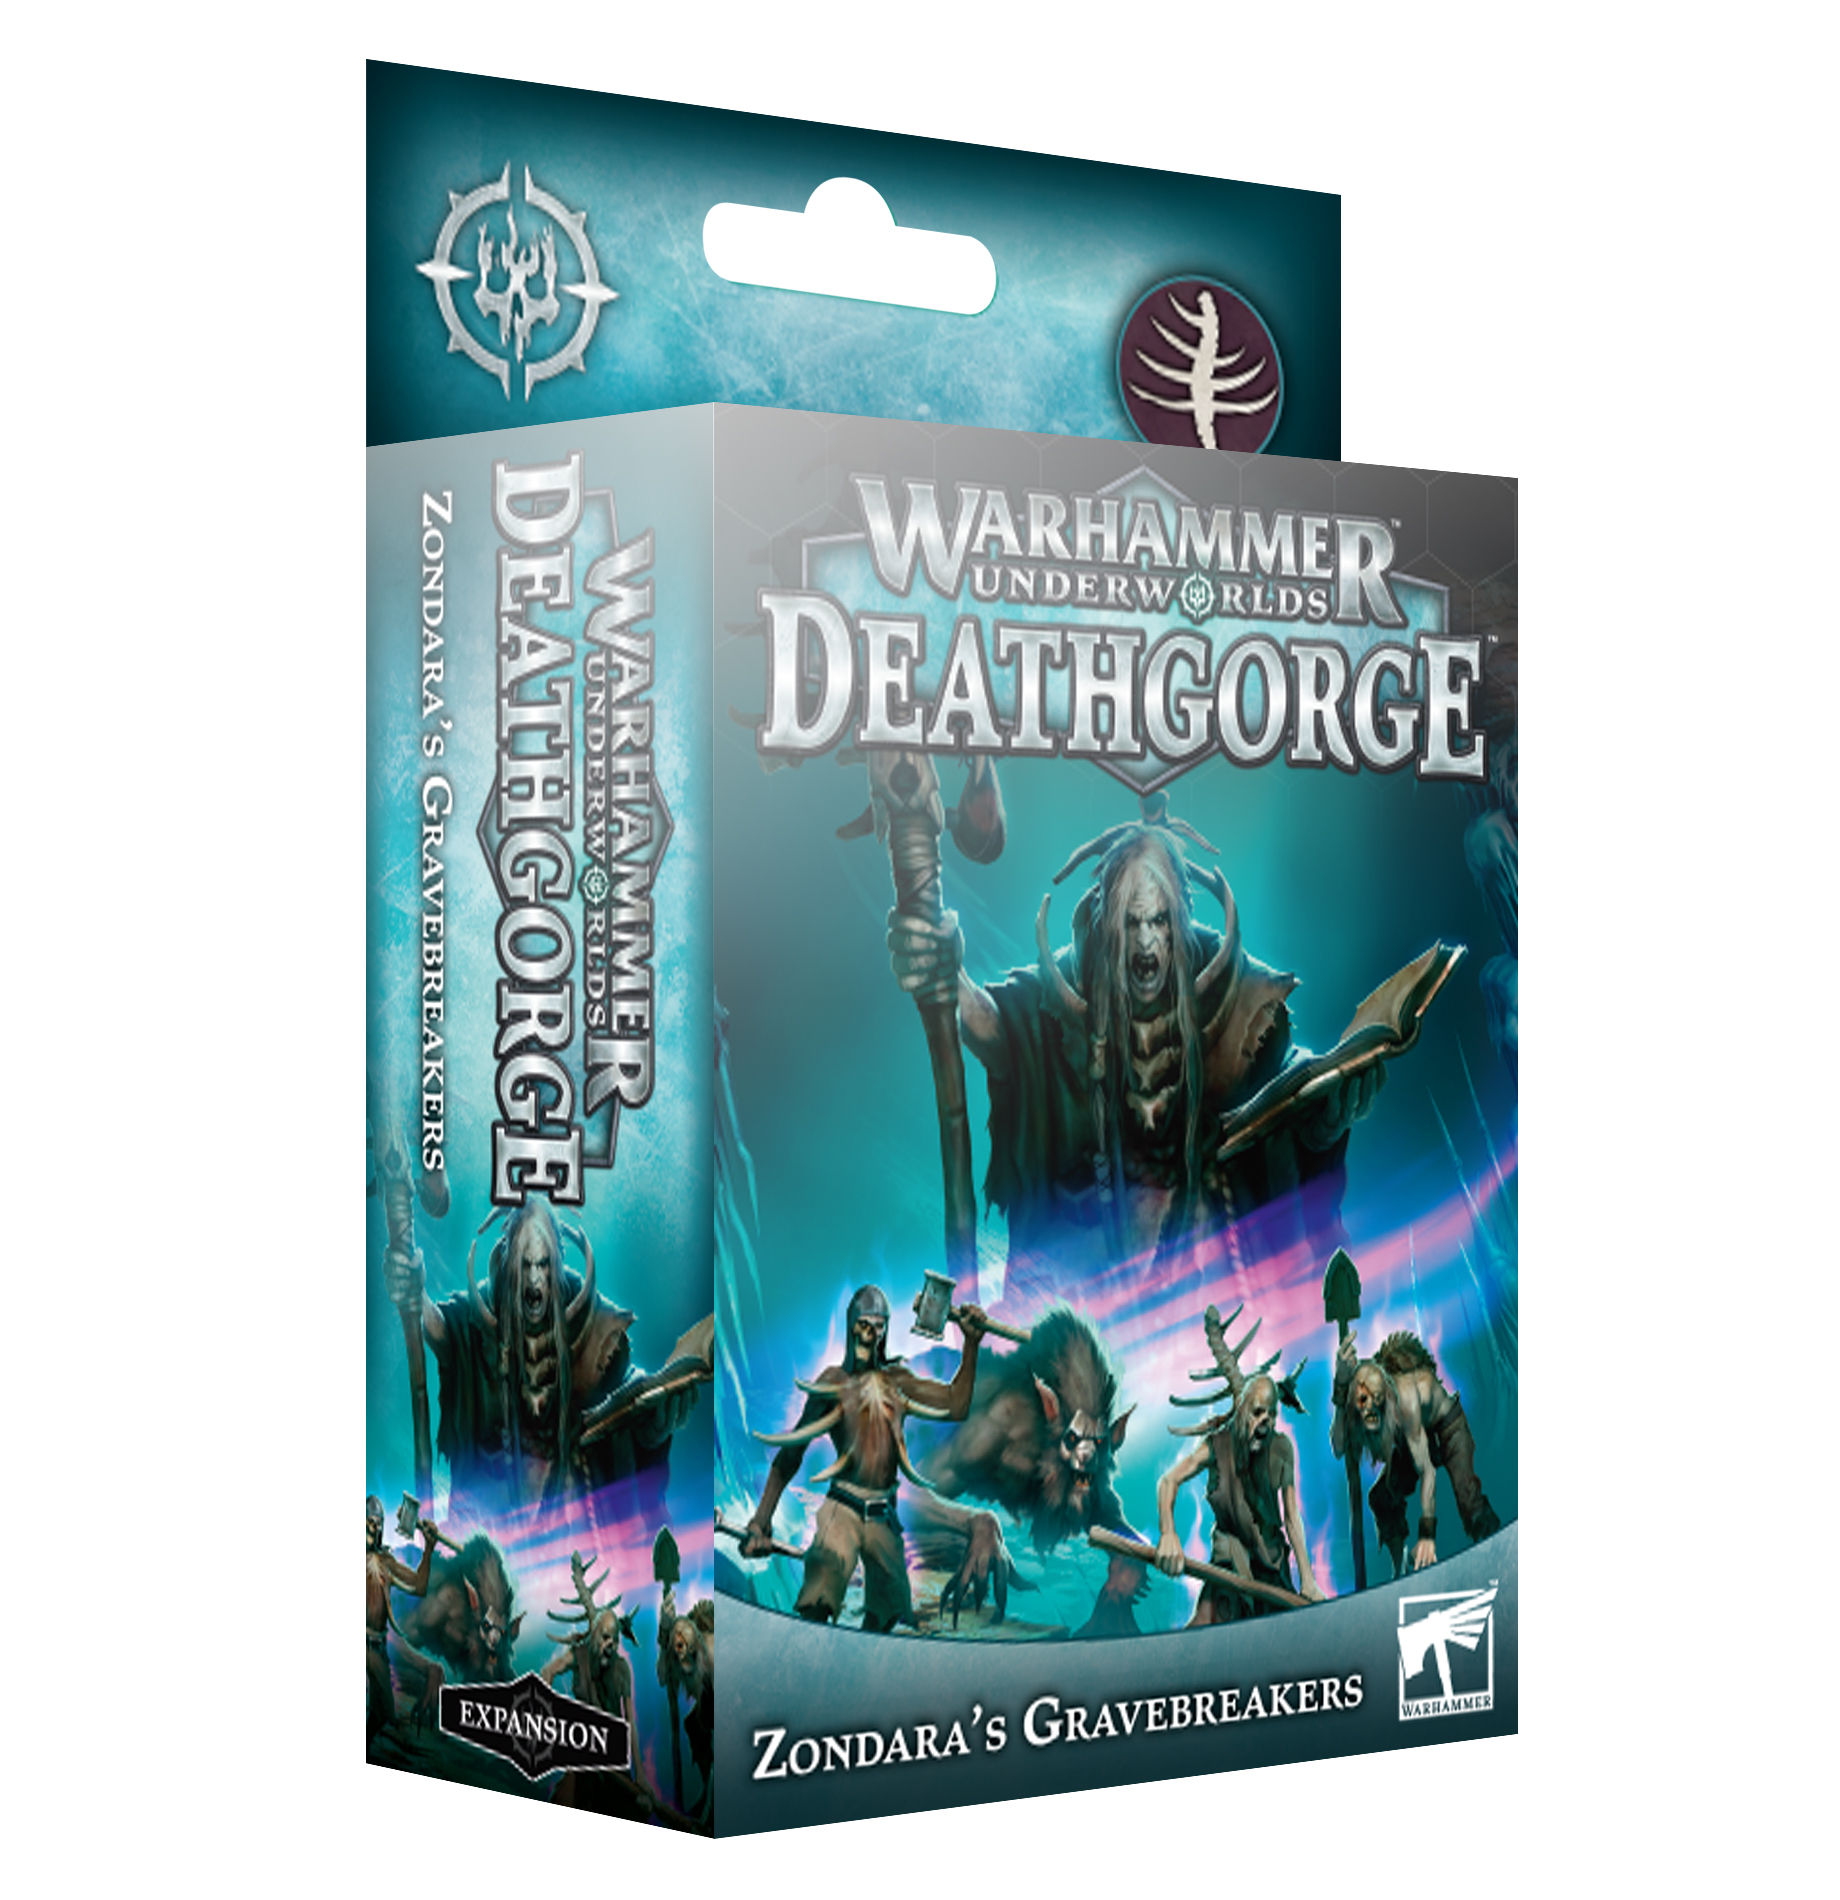 Warhammer Underworlds: Deathgorge: Zondaras Gravebreakers 